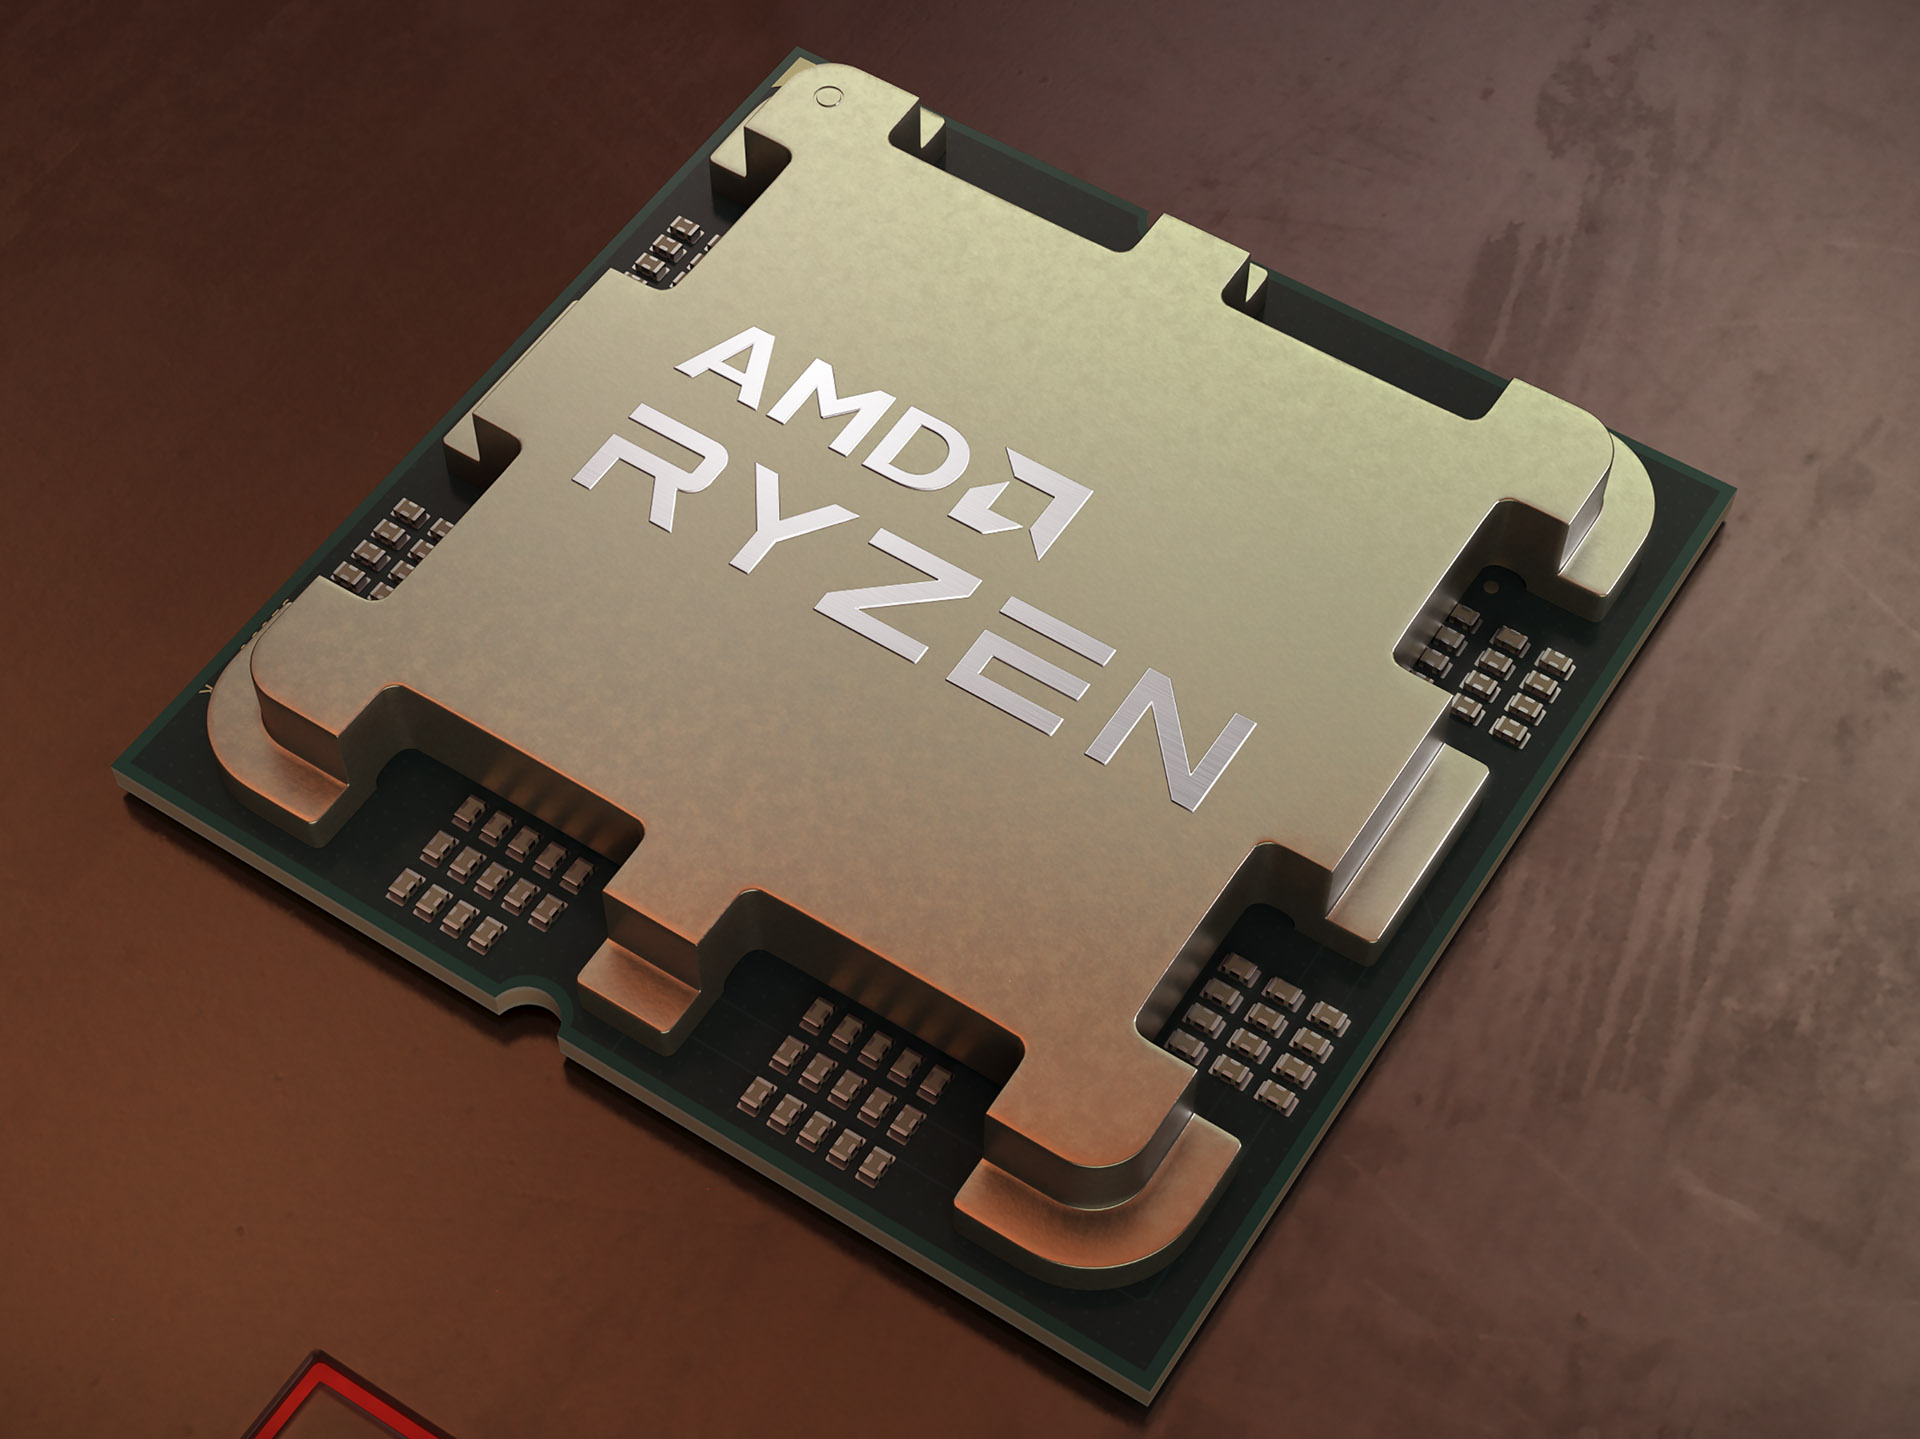 AMD Ryzen 7000 Zen4 desktop series launch September 27th, Ryzen